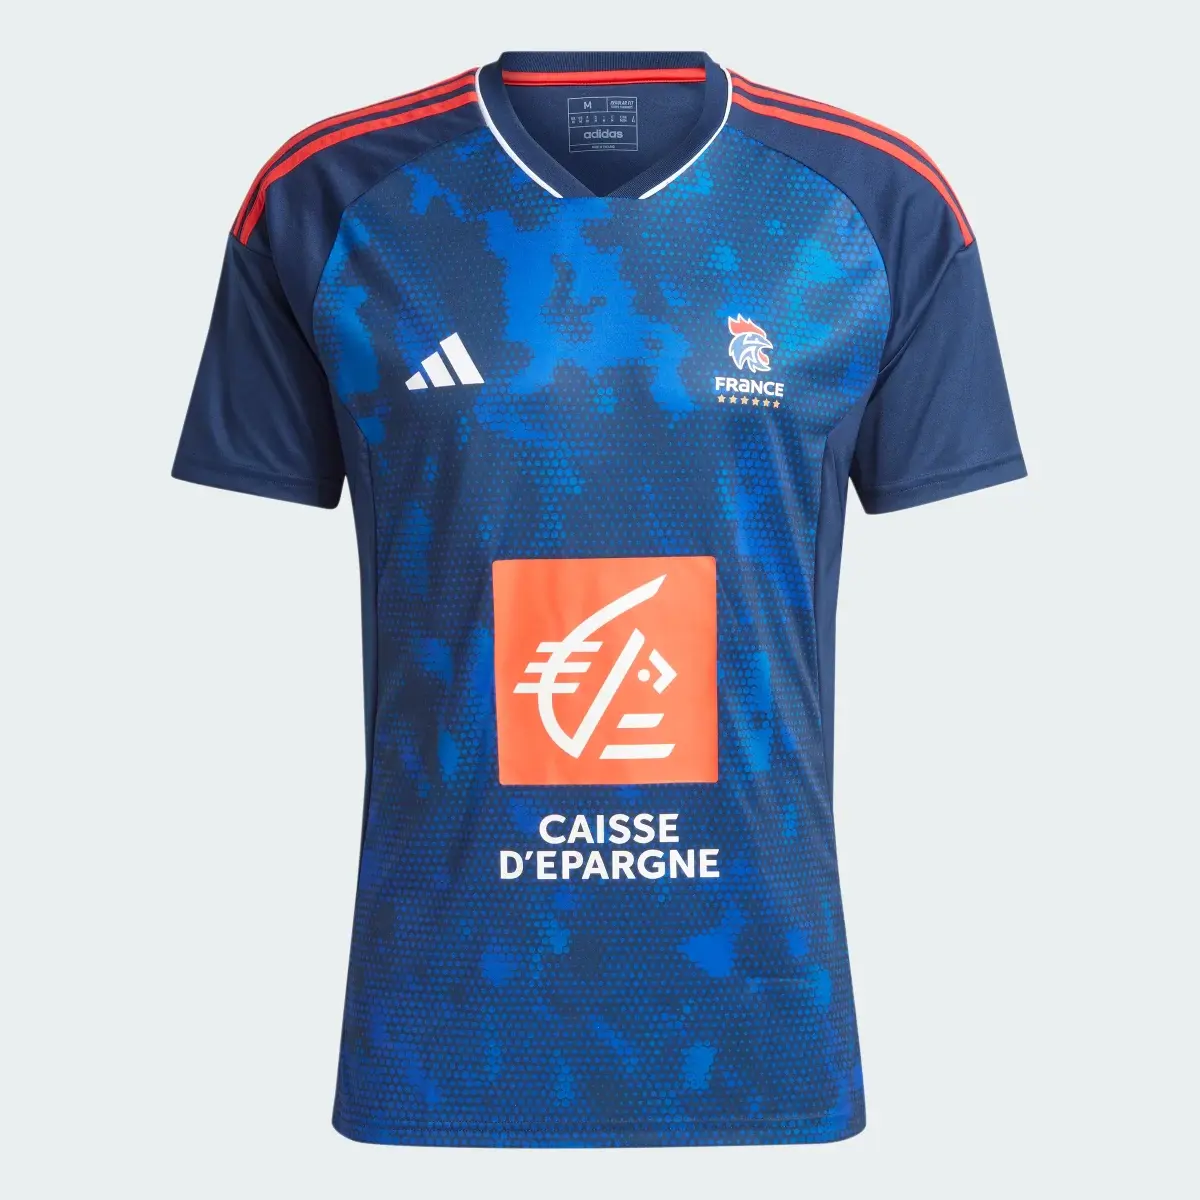 Adidas France AEROREADY Handball Jersey. 1